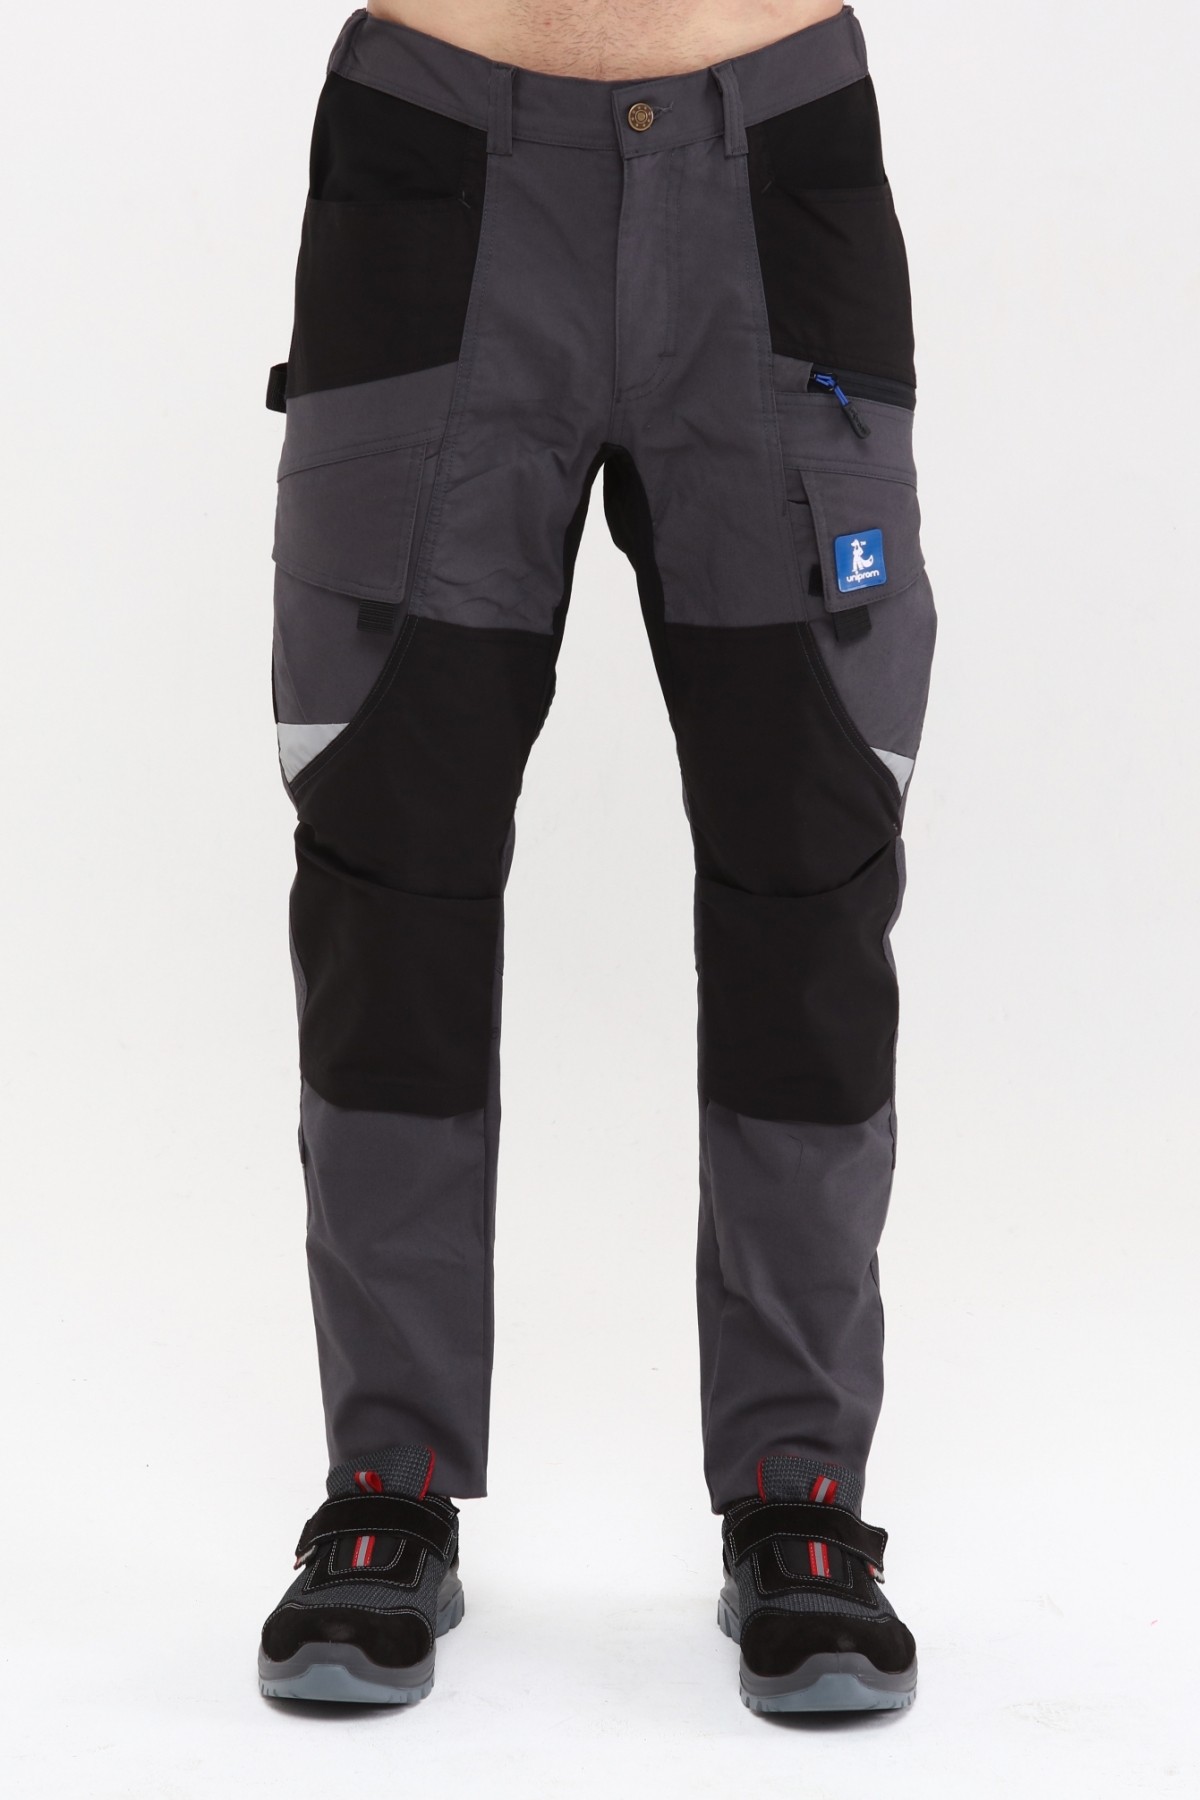 Uniprom İş Pantolonu Madrid Model 10 Cepli Full Likralı Diz Destekli Füme